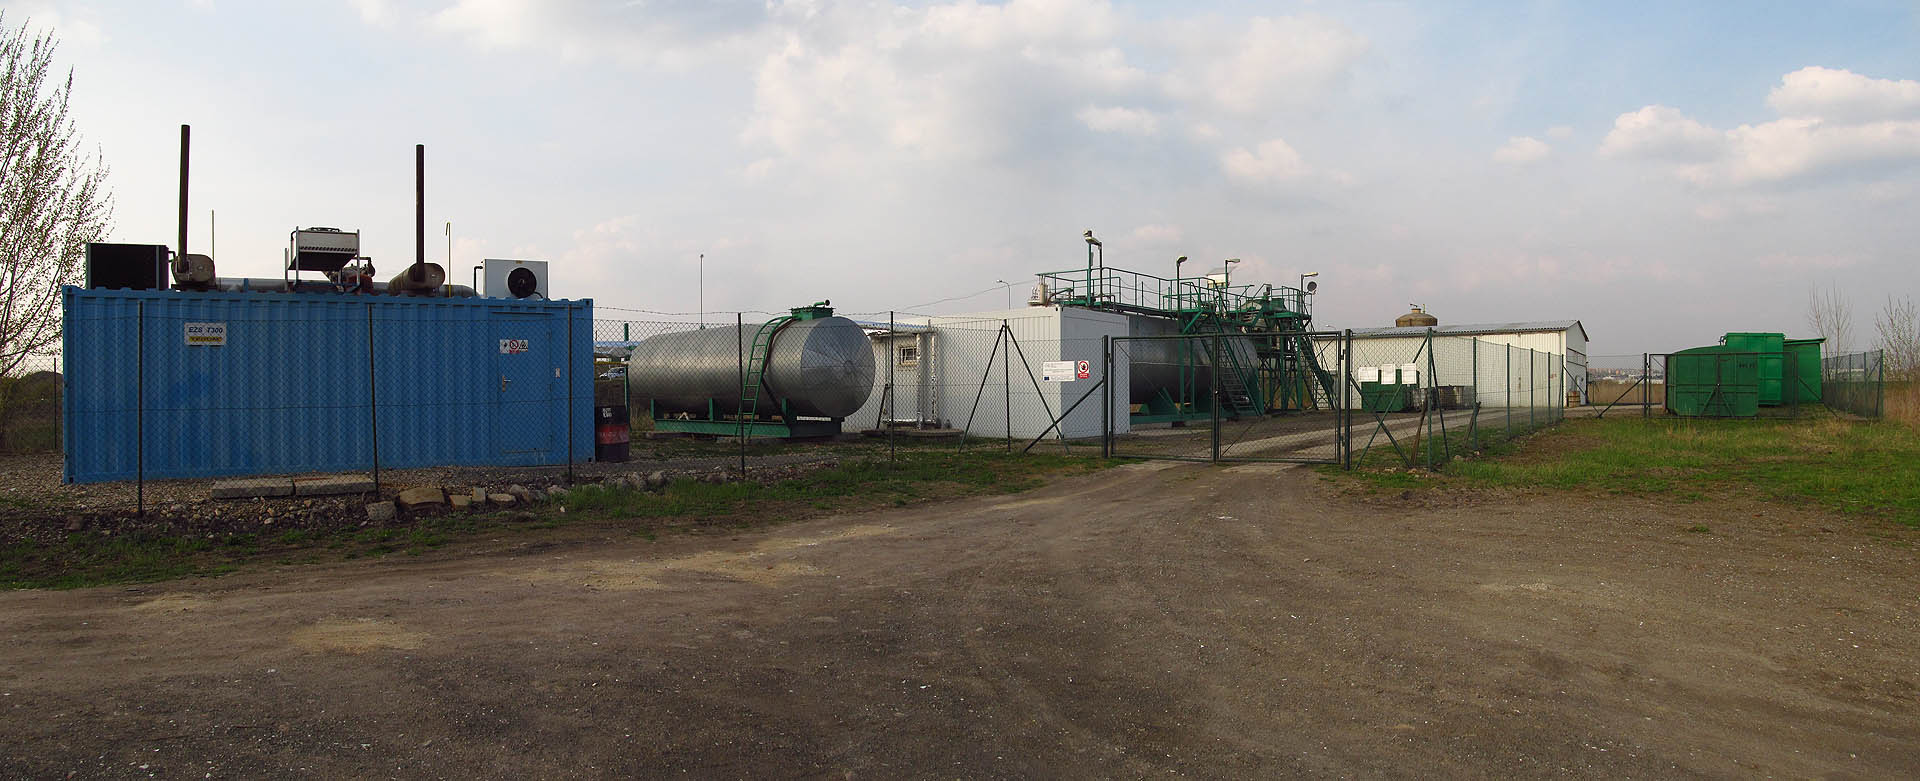 Jediná bioplynová stanice v Brně má kapacitu asi 1000 t biologicky rozložitelných odpadů ročně a jako experimentální zařízení ji provozuje Ústav pro využití plynu. Před zraky občanů je opravdu důmyslně ukryta ve čtvrti, o níž většina brňanů nemá ani ponětí. Zde, za bývalou rekultivovanou skládkou, obklopena továrními halami a opuštěnými haldami tiše vrní v plně automatickém provozu. V připojené kogenerační jednotce (modrý kontejner) se vzniklý bioplyn spaluje za vzniku elektřiny společně se skládkovým plnynem z vedlejší uzavřené skládky, po které zatím vesele pobíhají zajíci a srnci.